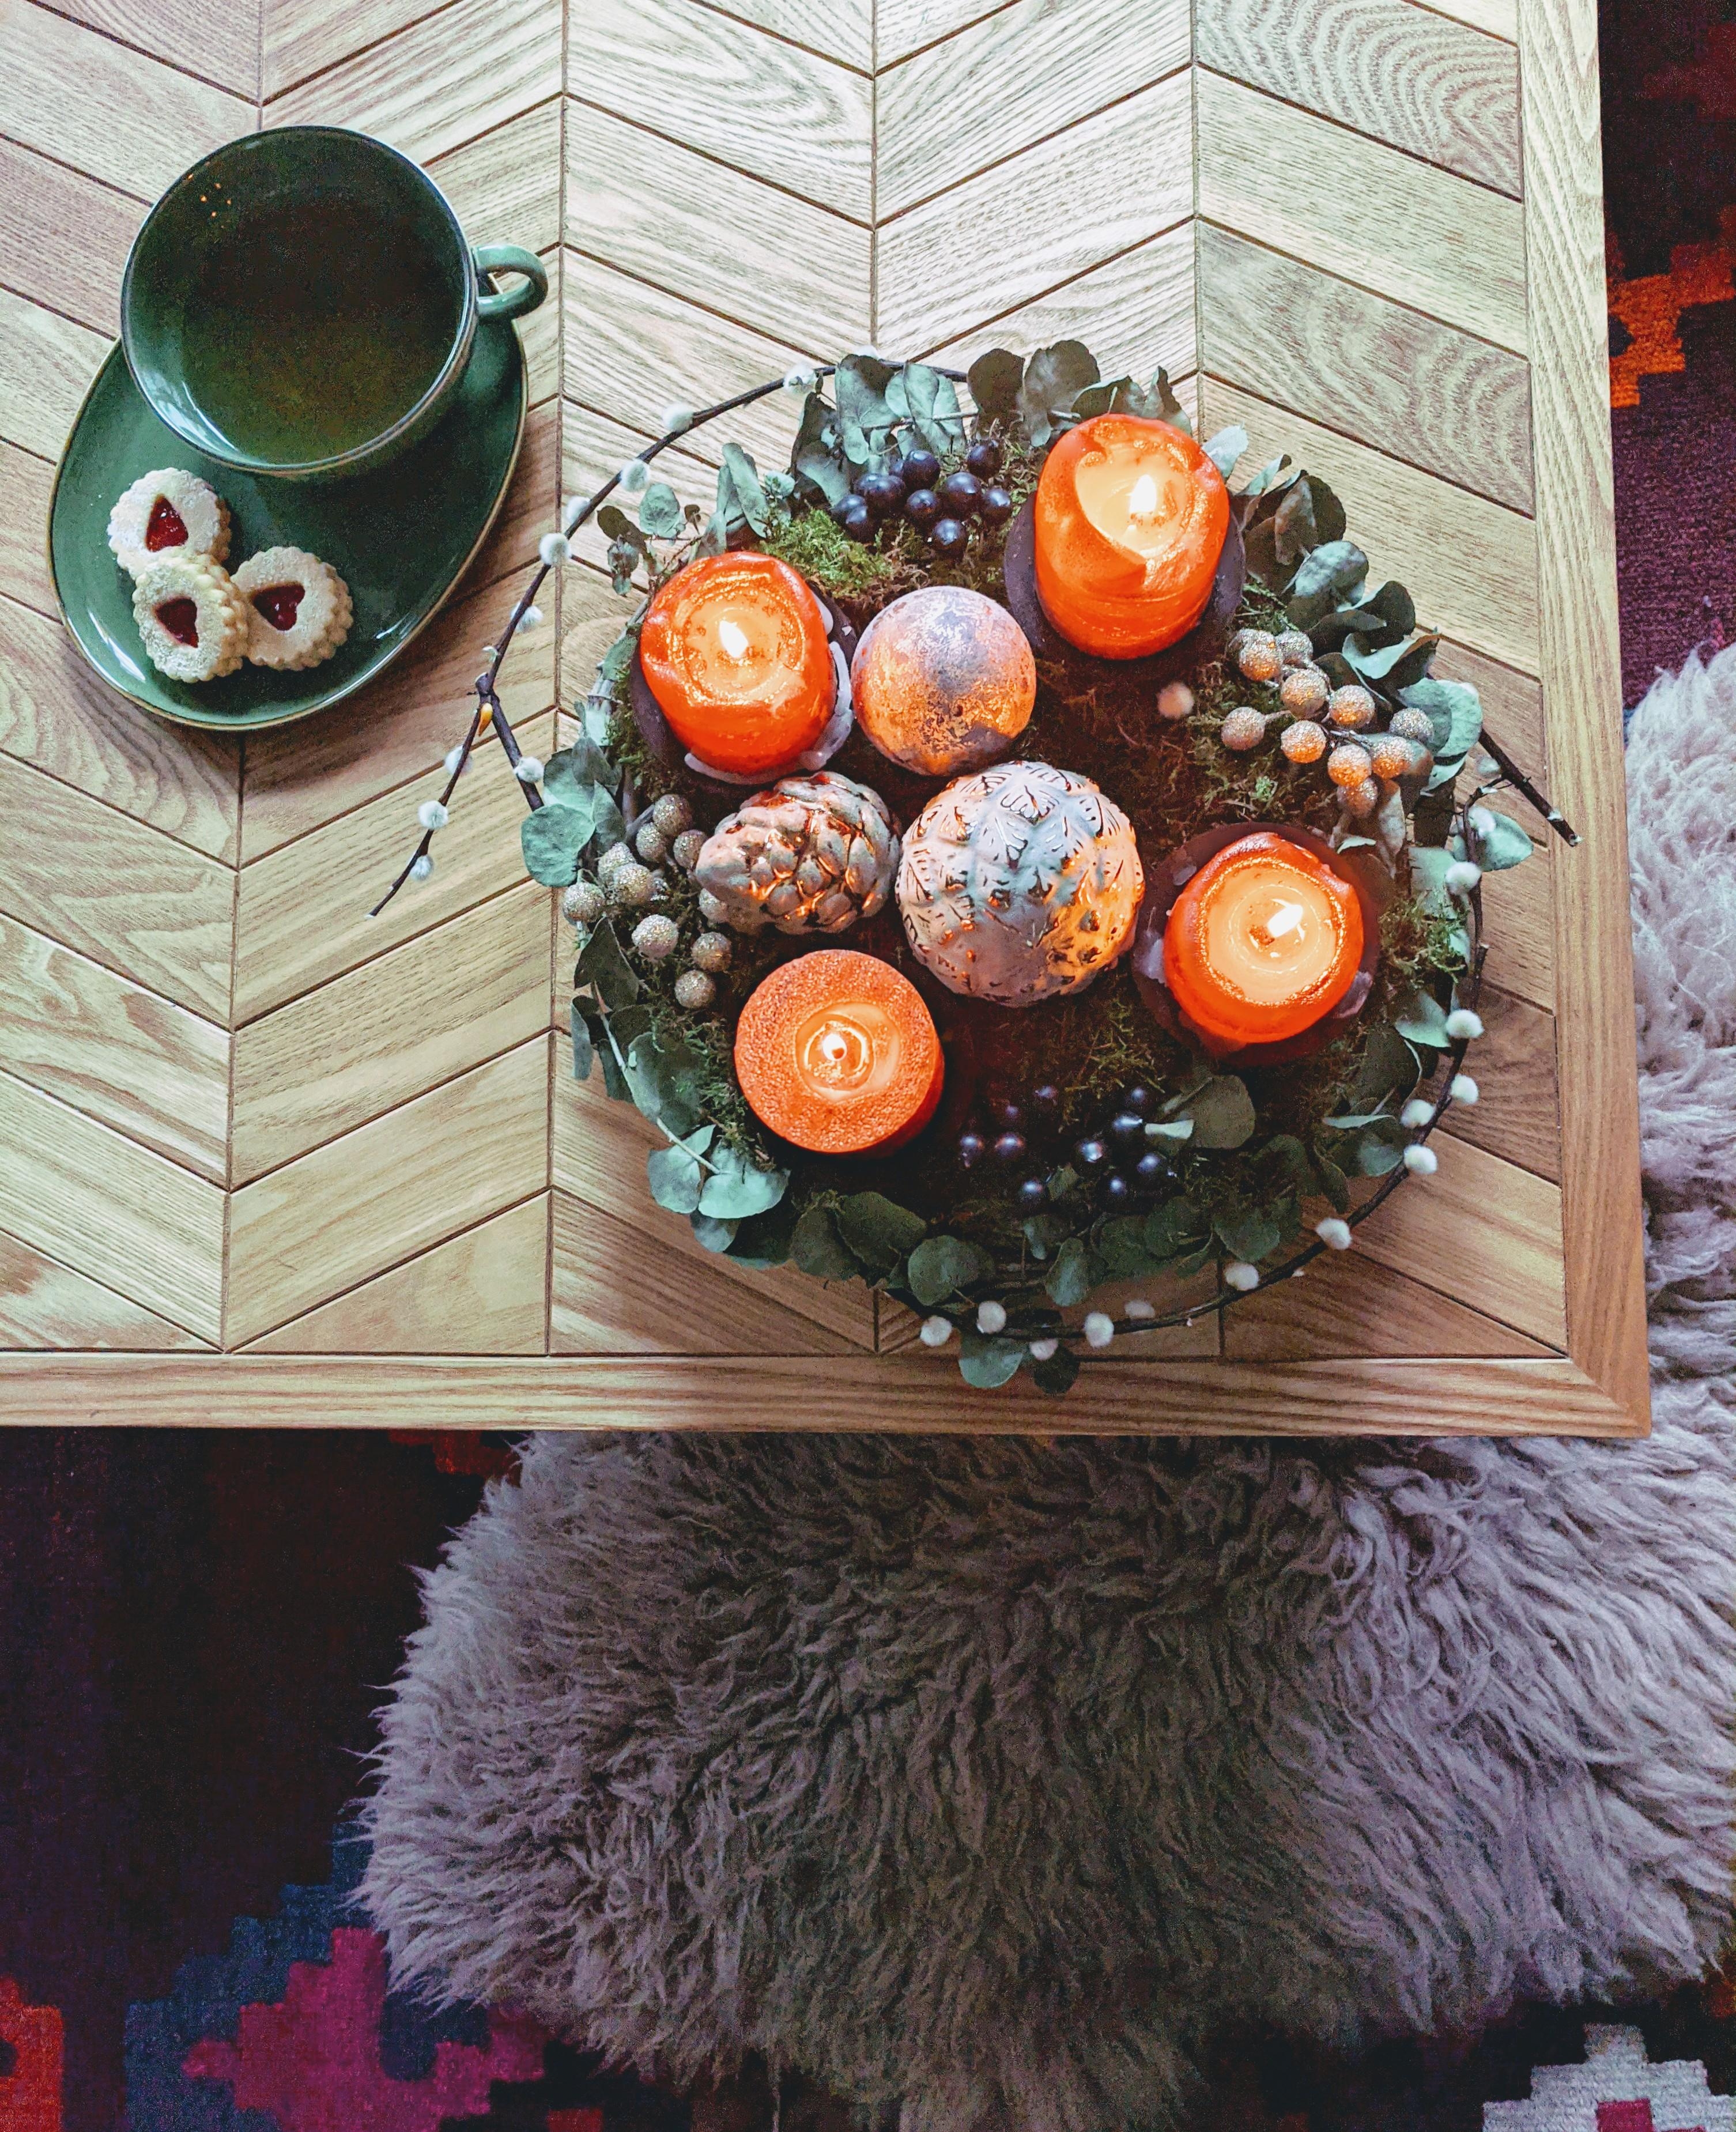 Schönen 4. Advent! #adventskranz #kekse #wohnzimmer #couchtisch #weihnachtsdeko #cozy #hyggelig